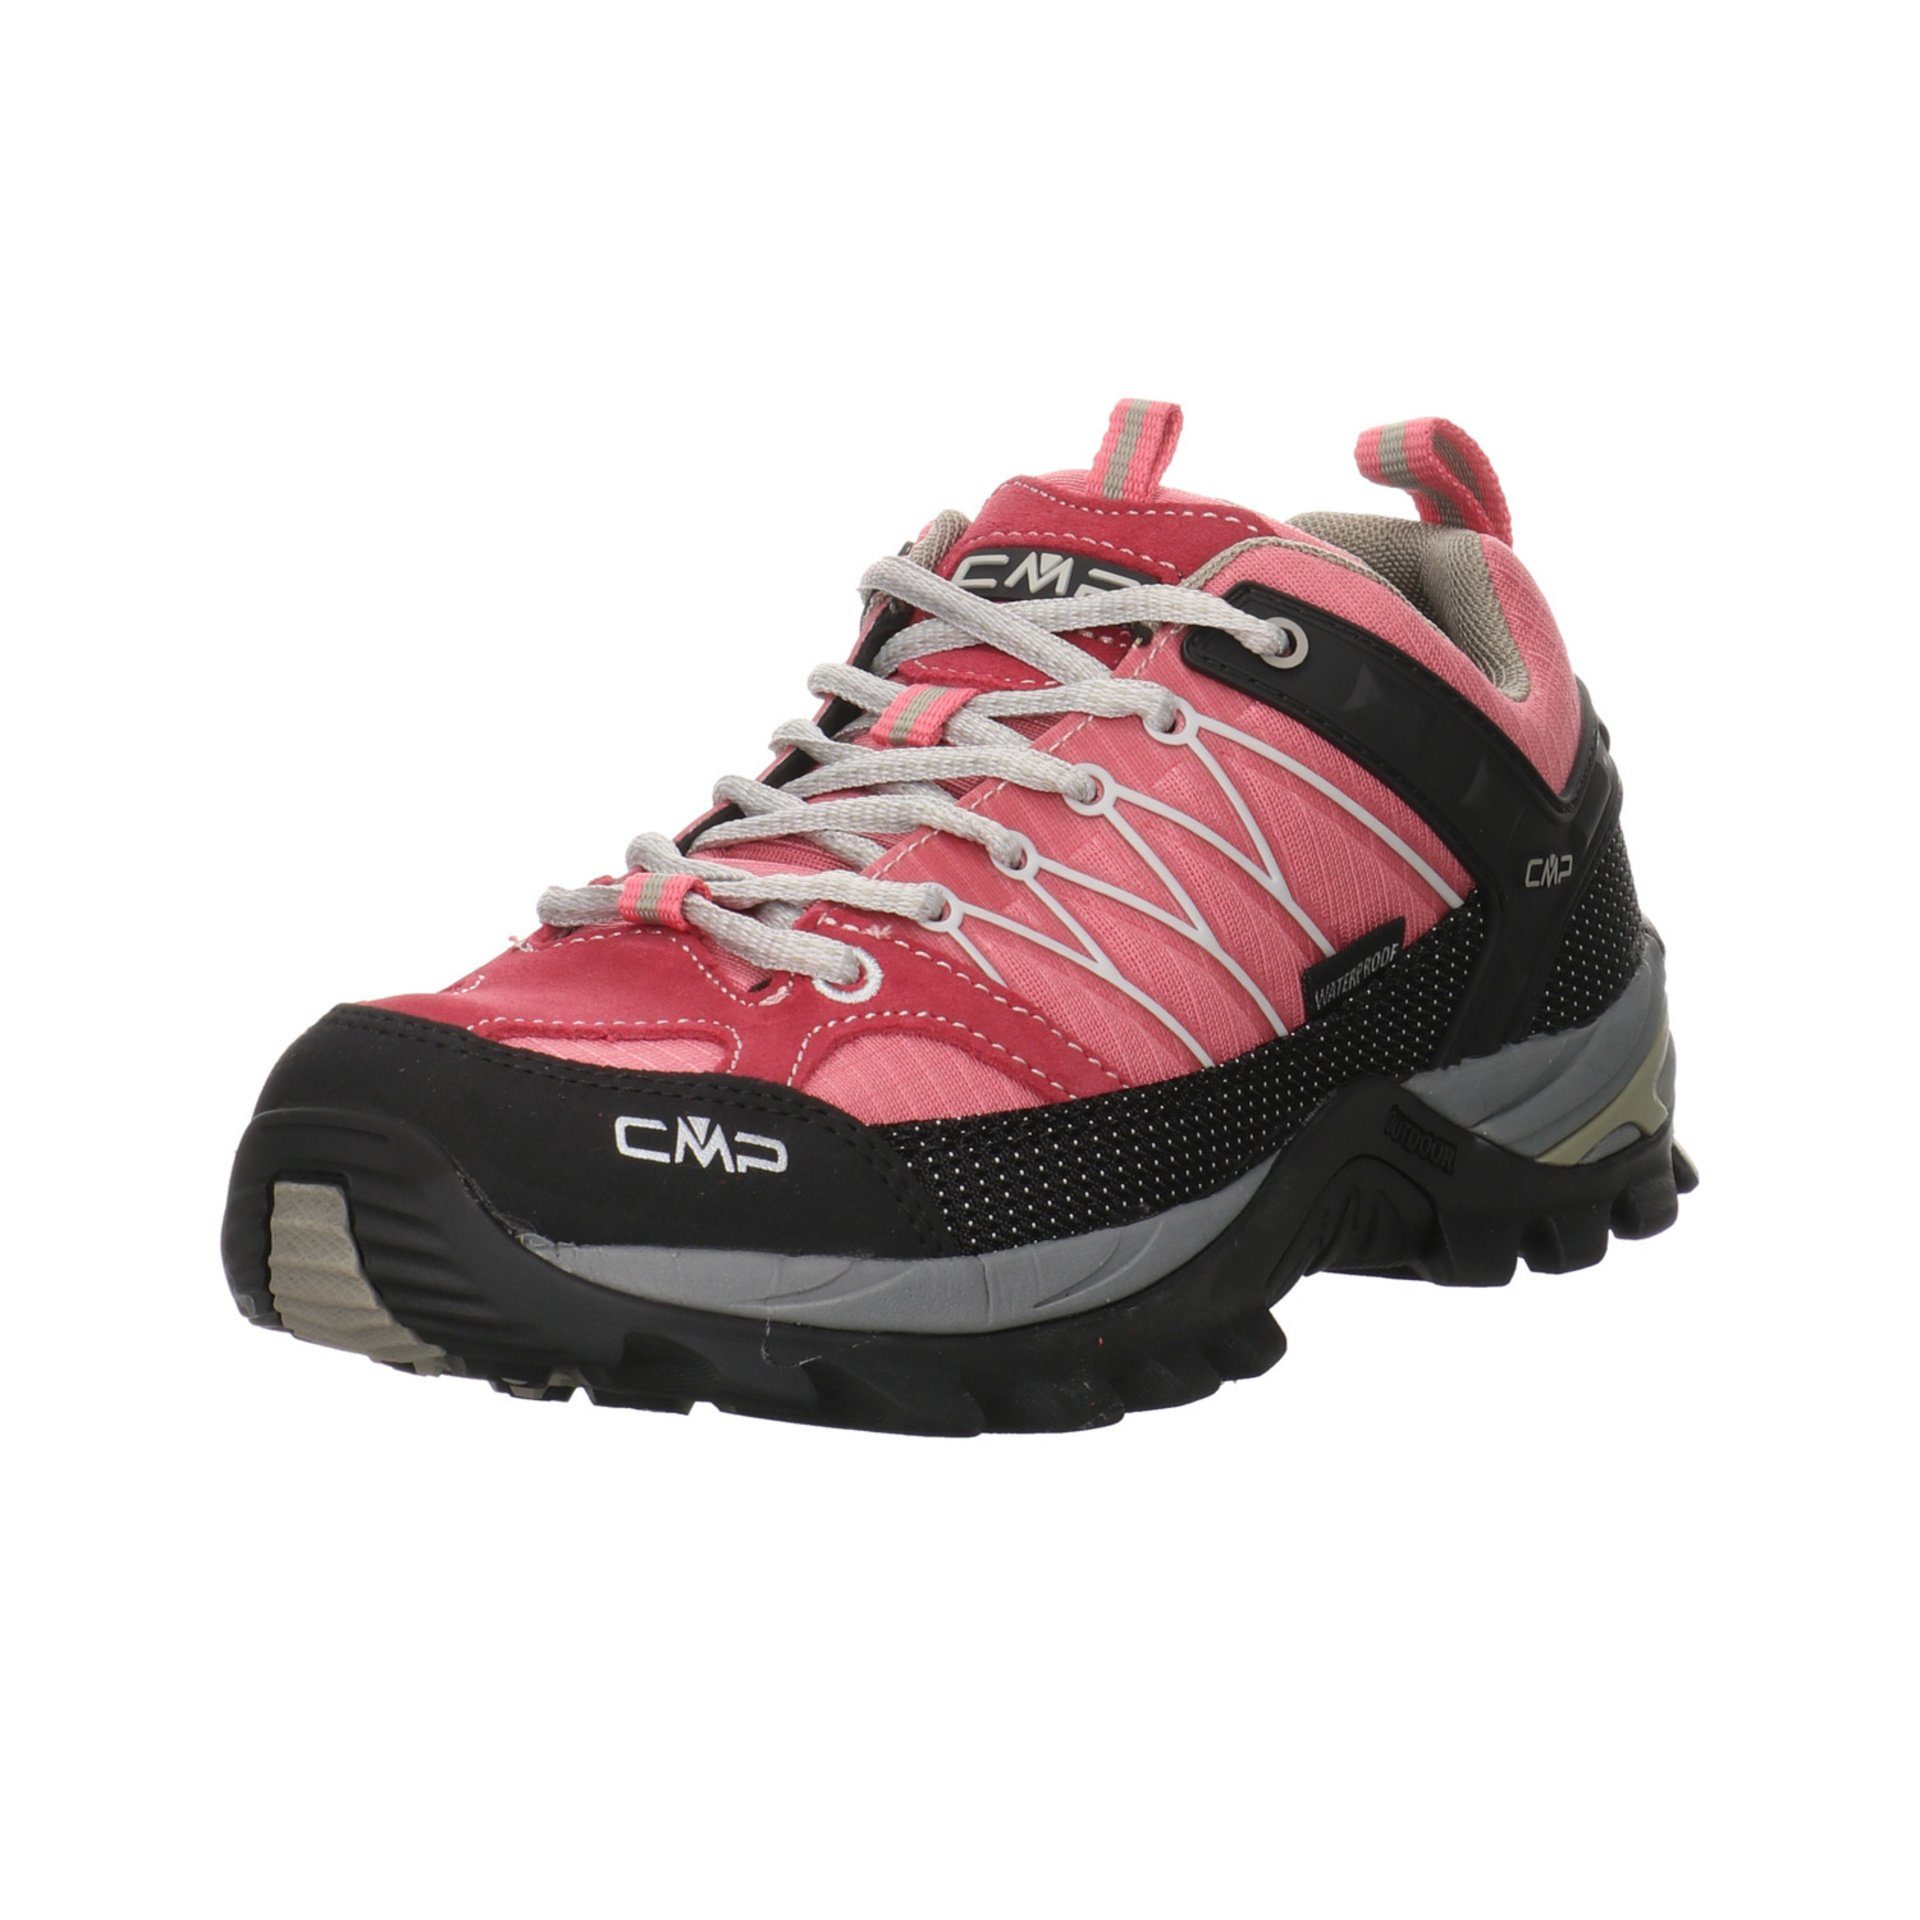 CMP Damen Schuhe Outdoor Rigel Low Outdoorschuh rot+lila Leder-/Textilkombination kombi-schwa Outdoorschuh